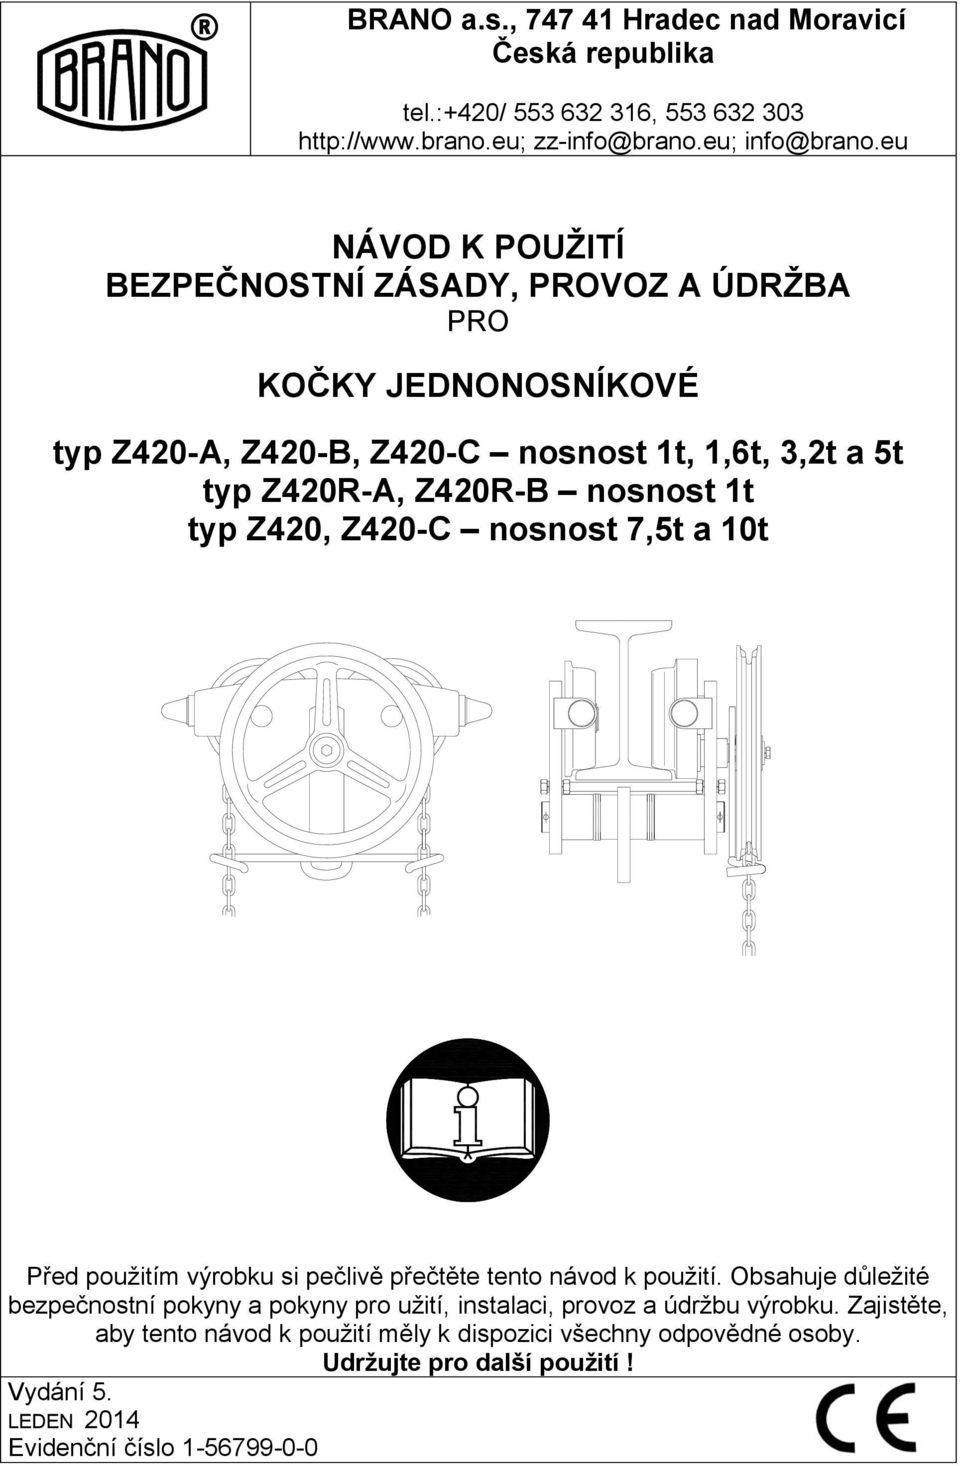 1t typ Z420, Z420-C nosnost 7,5t a 10t Před pouţitím výrobku si pečlivě přečtěte tento návod k pouţití.